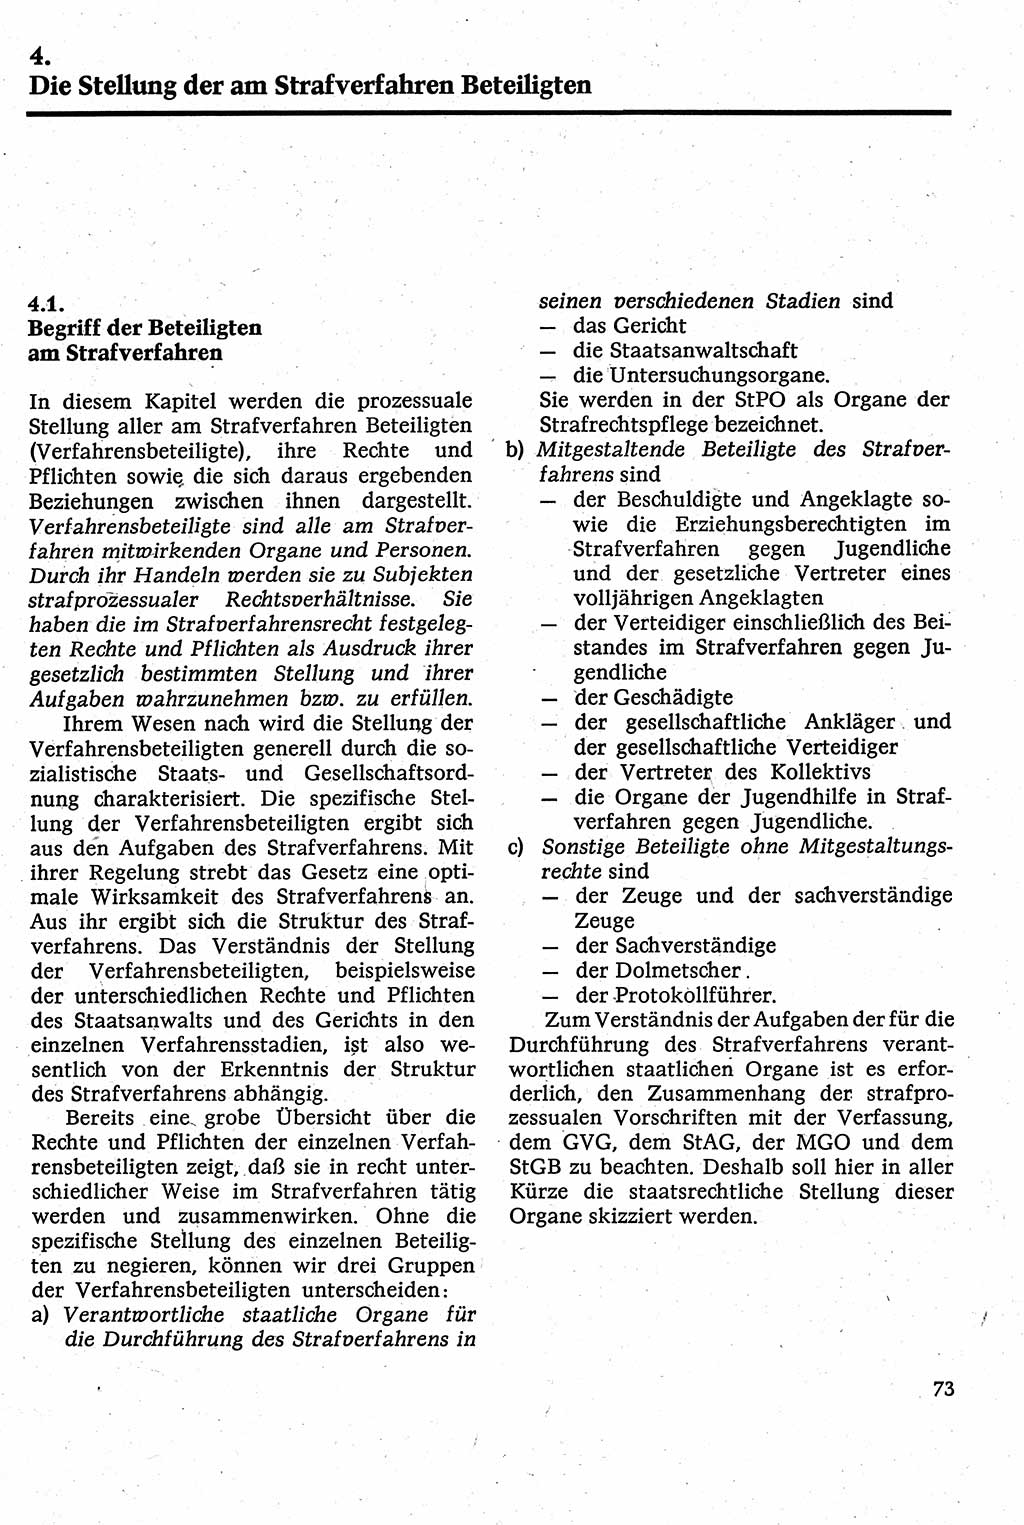 Strafverfahrensrecht [Deutsche Demokratische Republik (DDR)], Lehrbuch 1982, Seite 73 (Strafverf.-R. DDR Lb. 1982, S. 73)